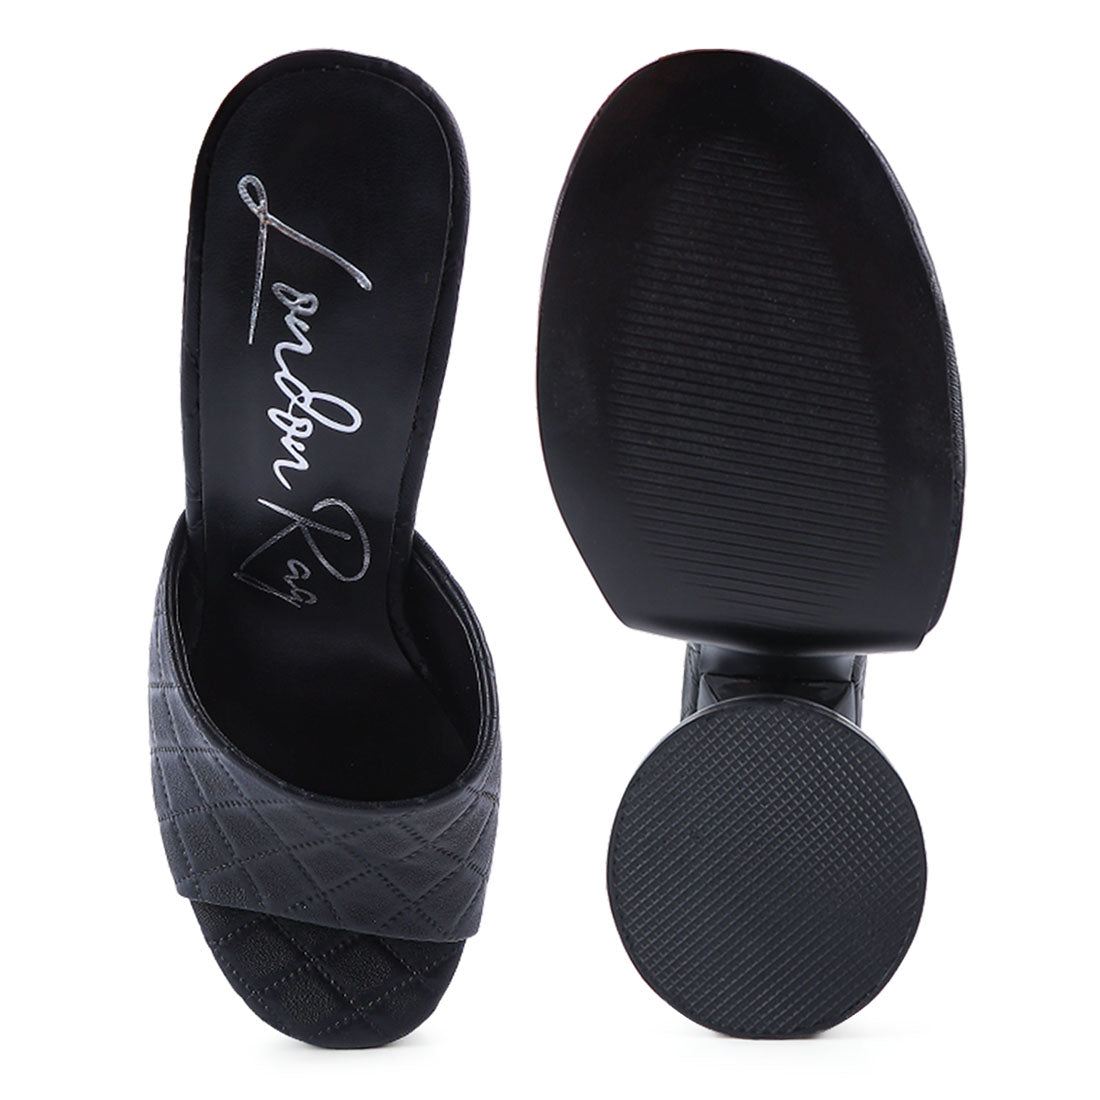 Black Quilted High Heeled Platform Sandals